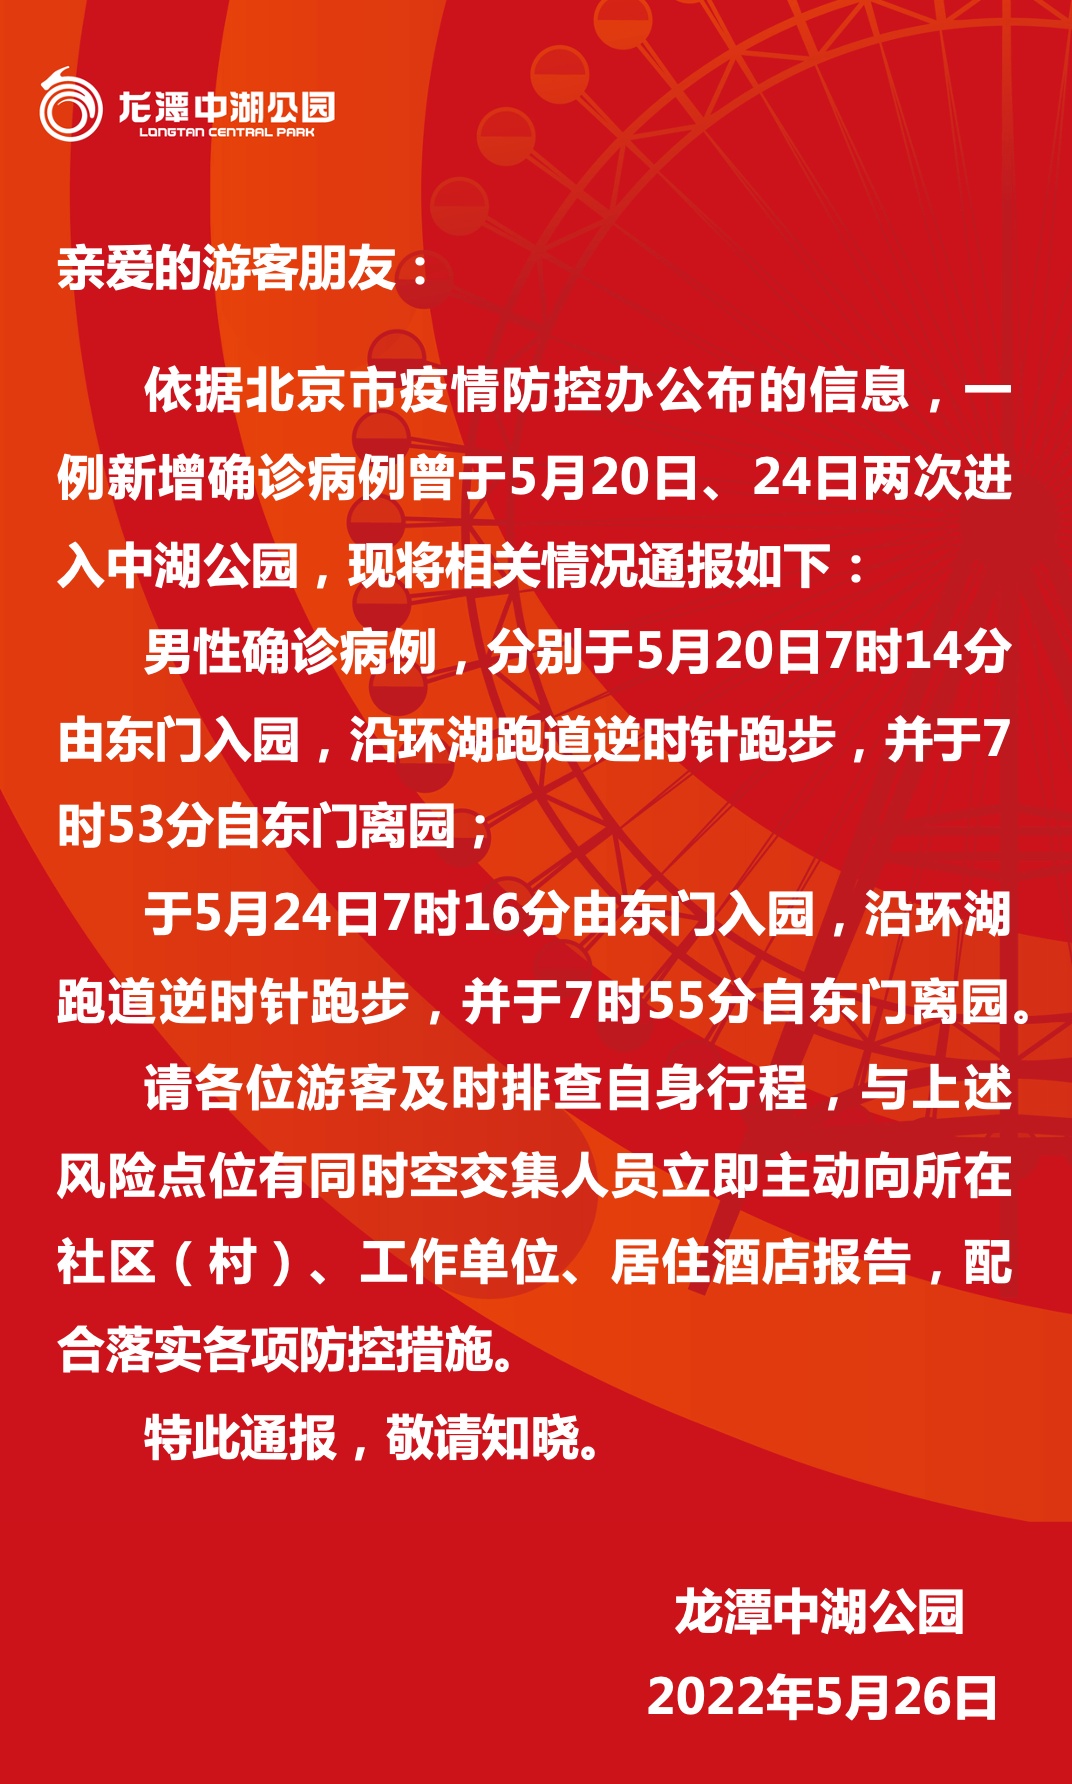 北京一新增病例两次进入龙潭中湖公园，园内活动轨迹发布